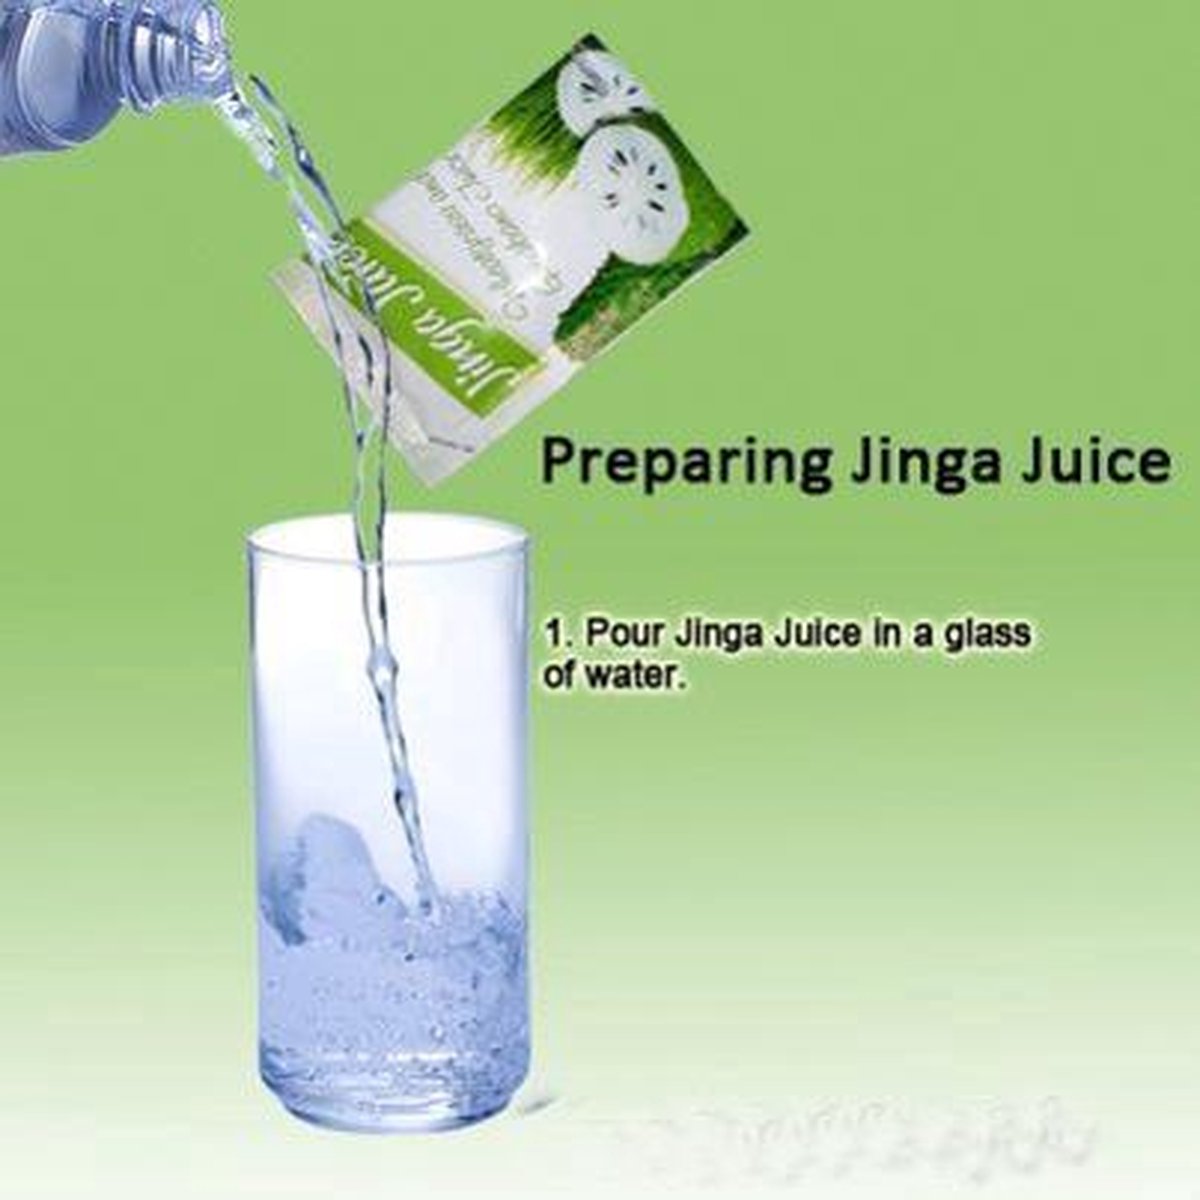 jinga juice with stevia